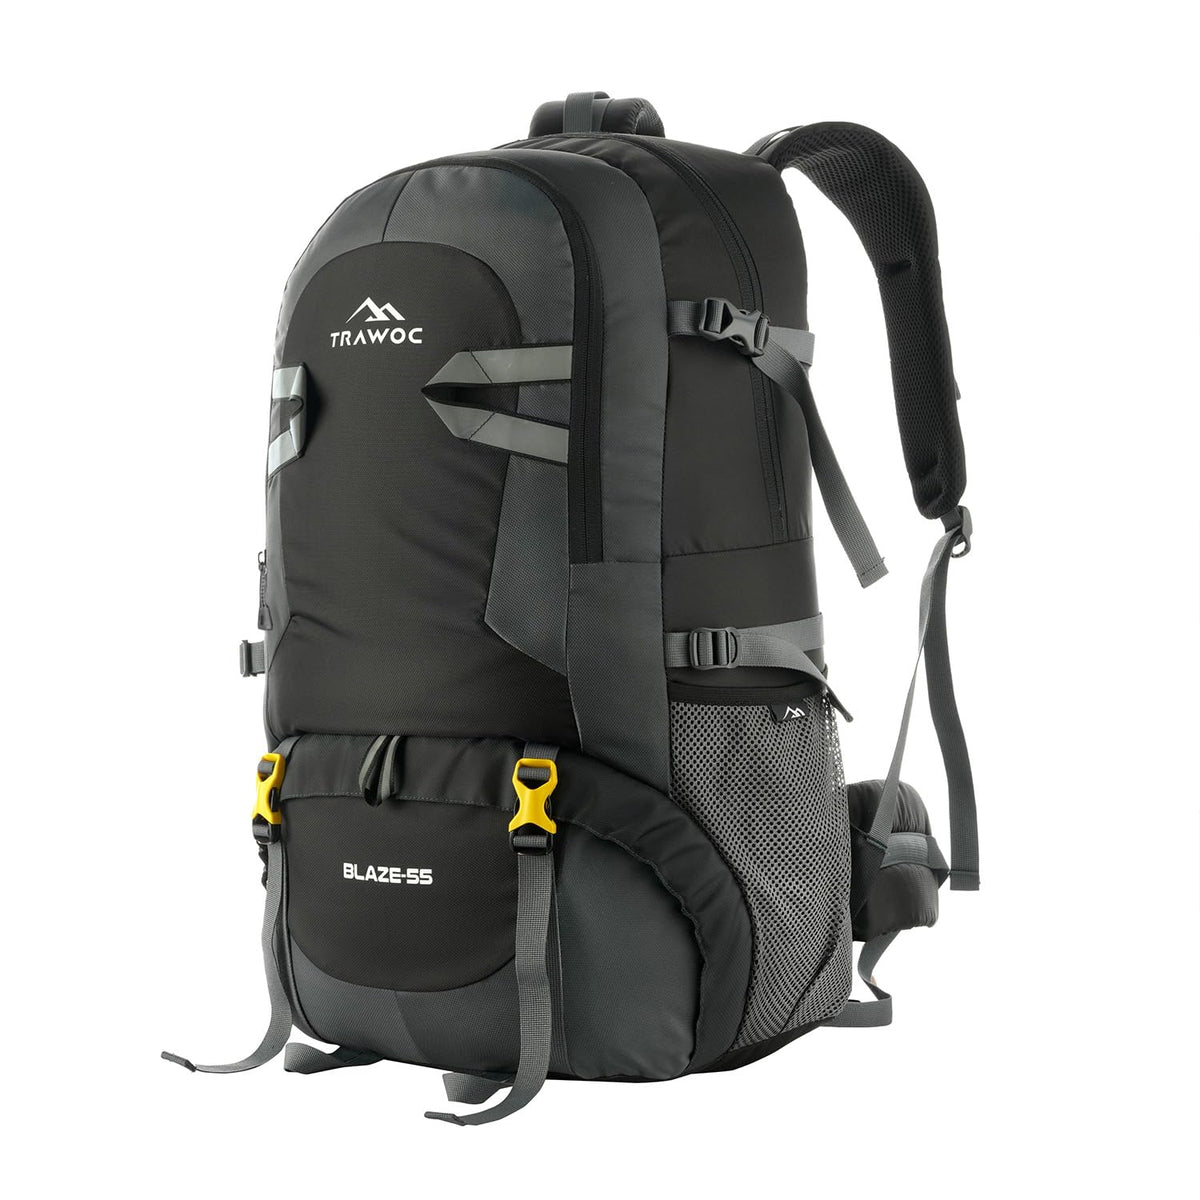 BLAZE-55 Backpack - Black